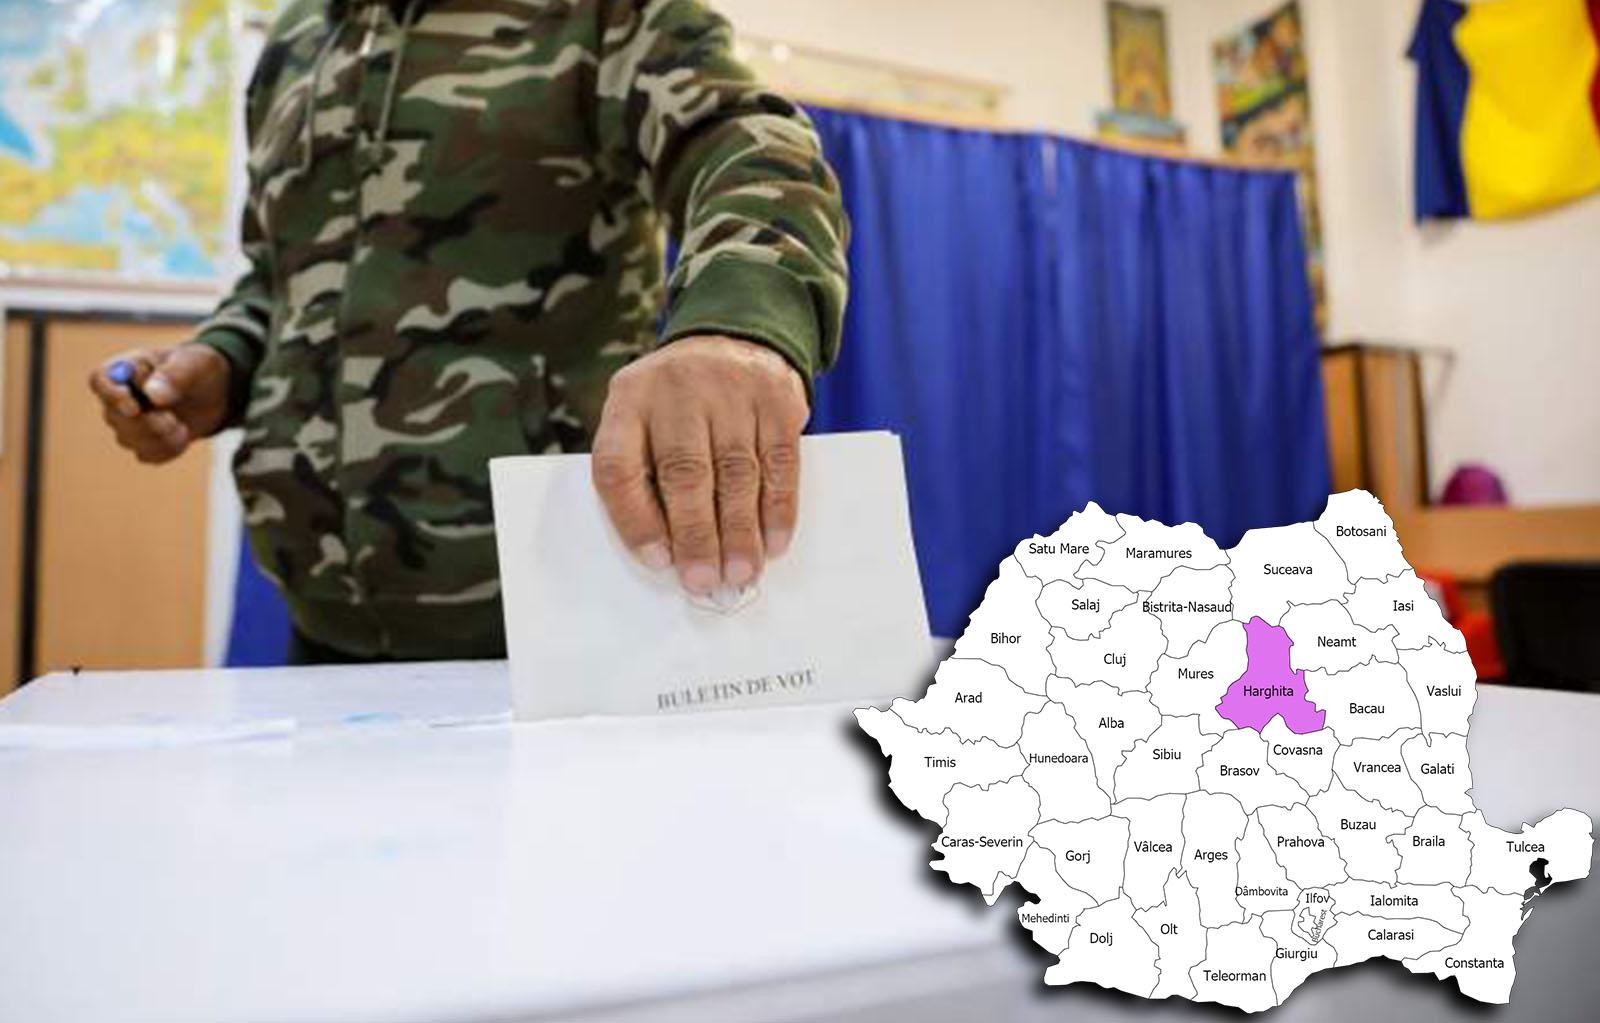 Rezultate alegeri parlamentare 2020 în județul Harghita. Cine câștigă alegerile pentru Senat și Camera Deputaților